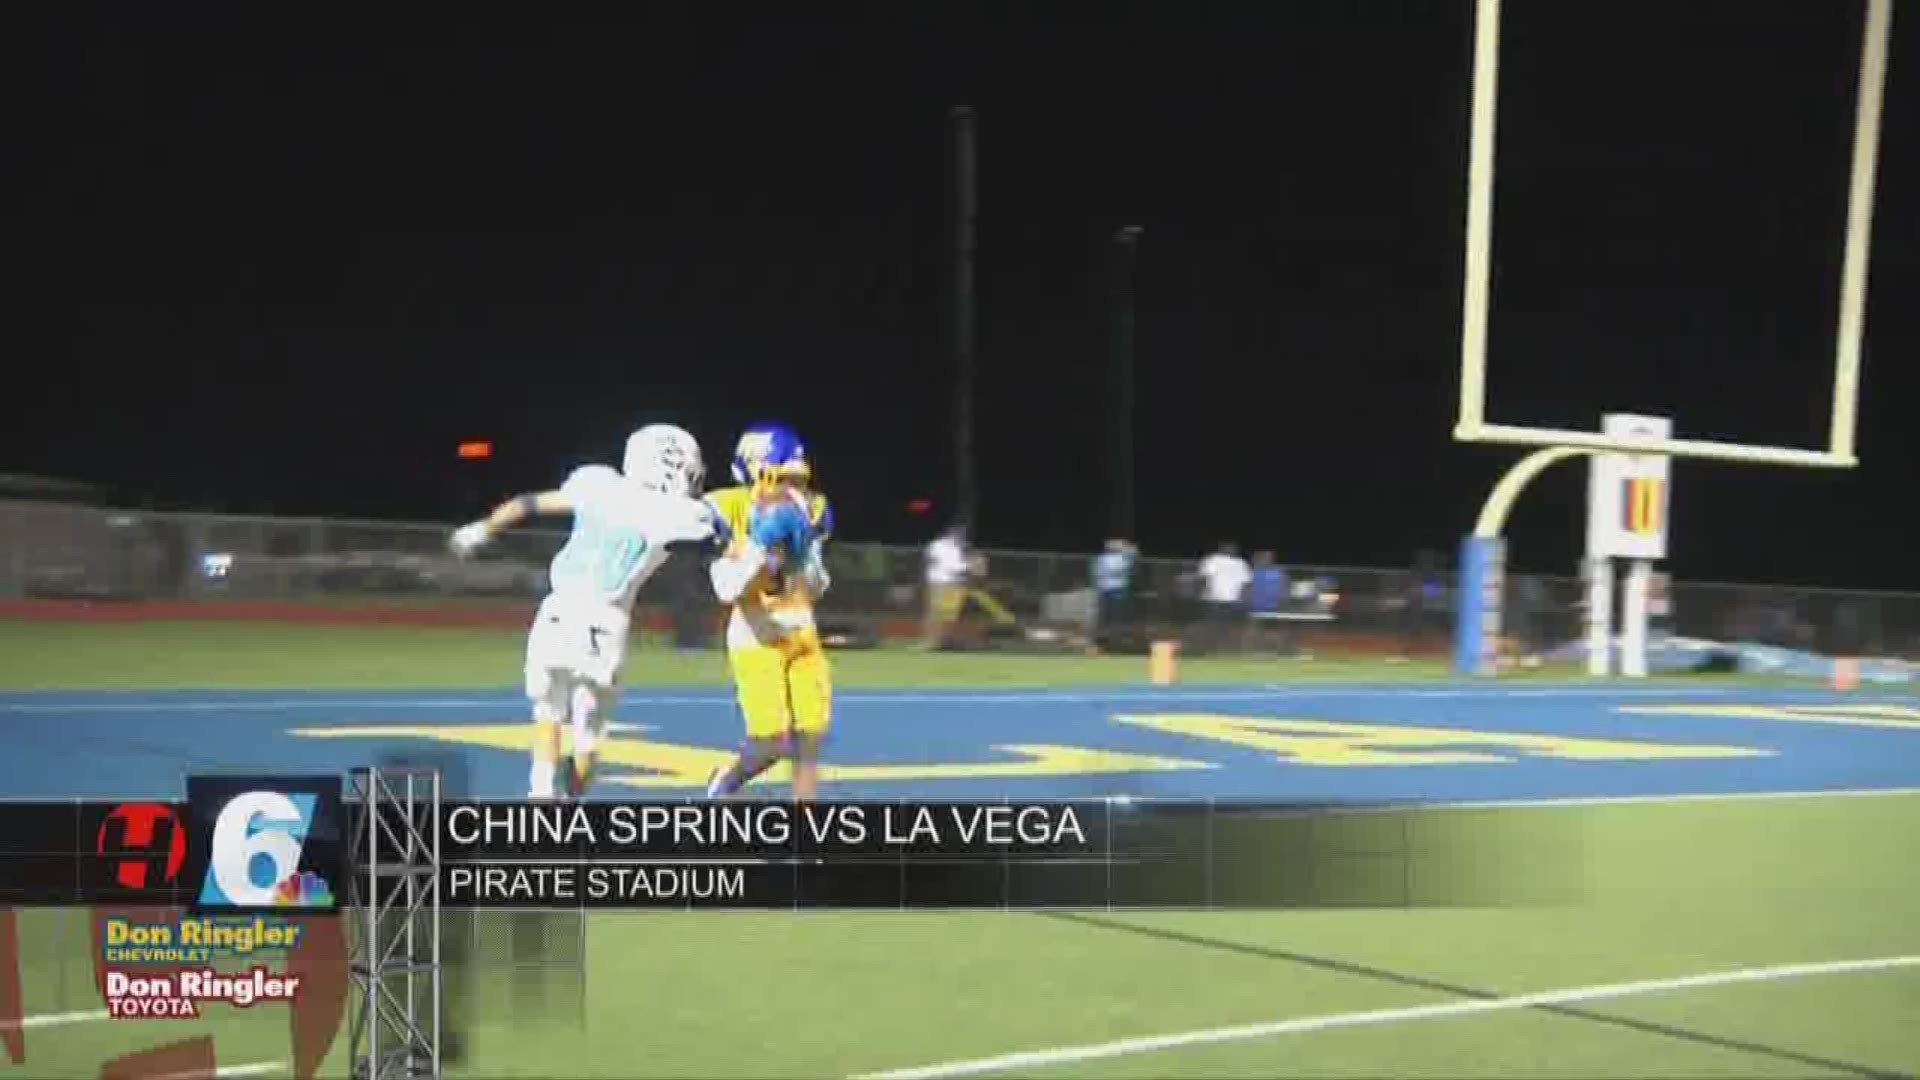 China Spring vs La Vega highlights